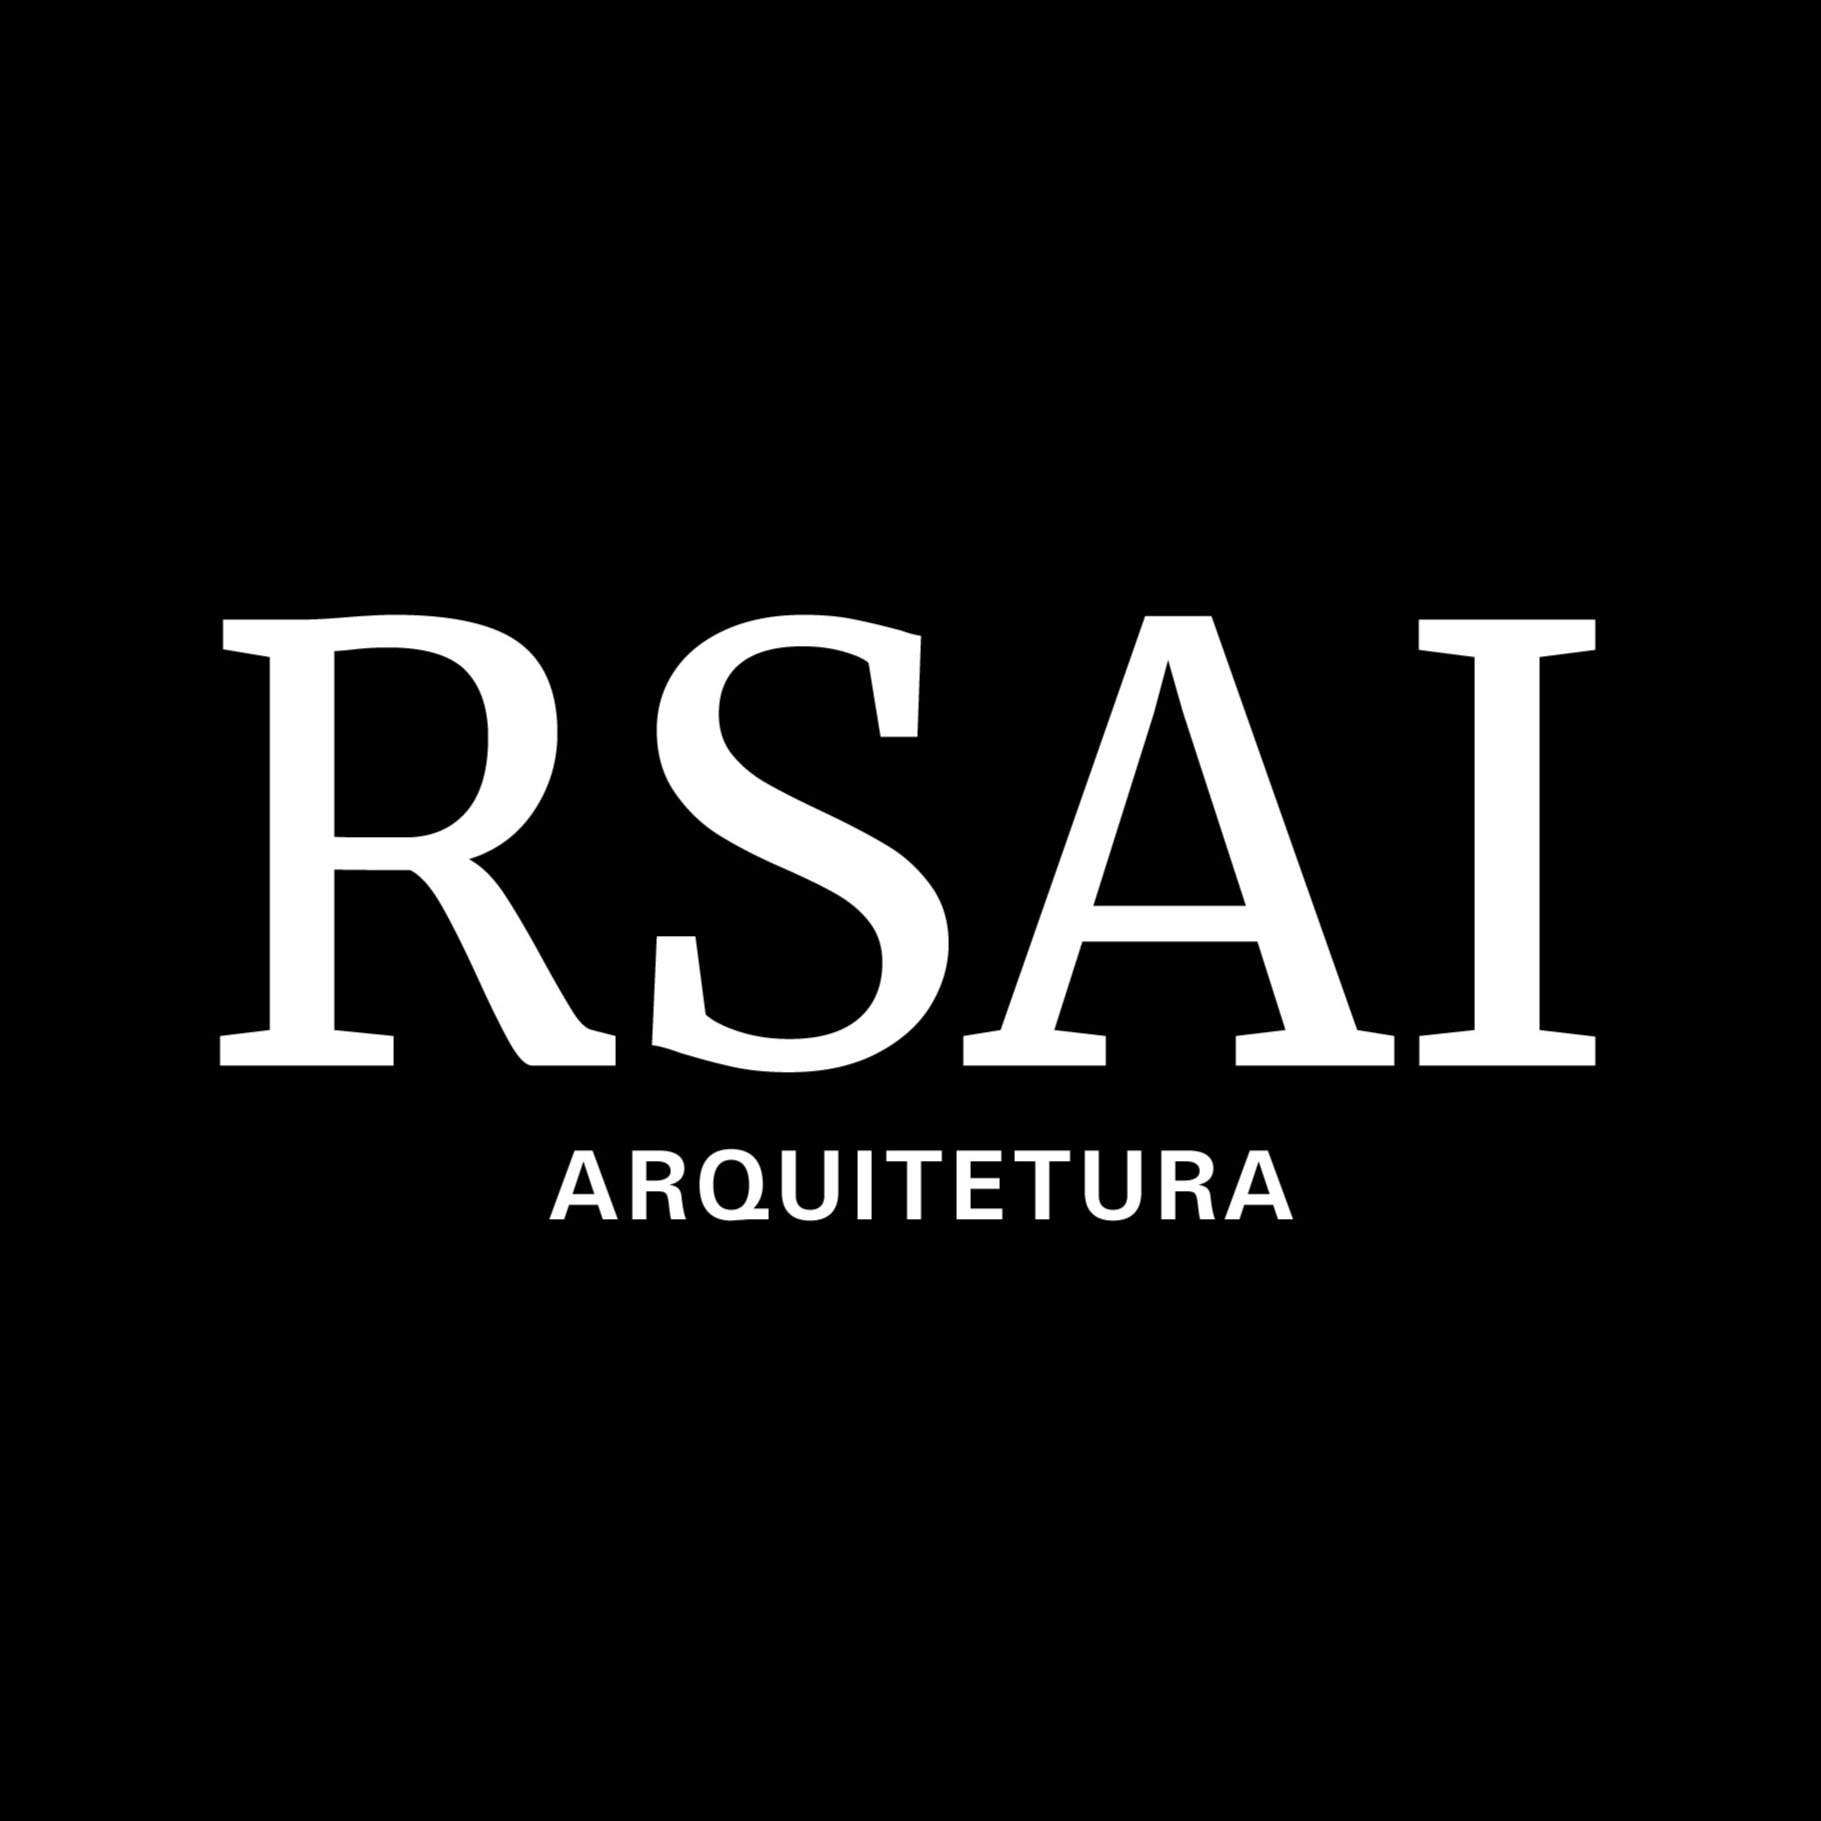 Images RSAI Arquitetura